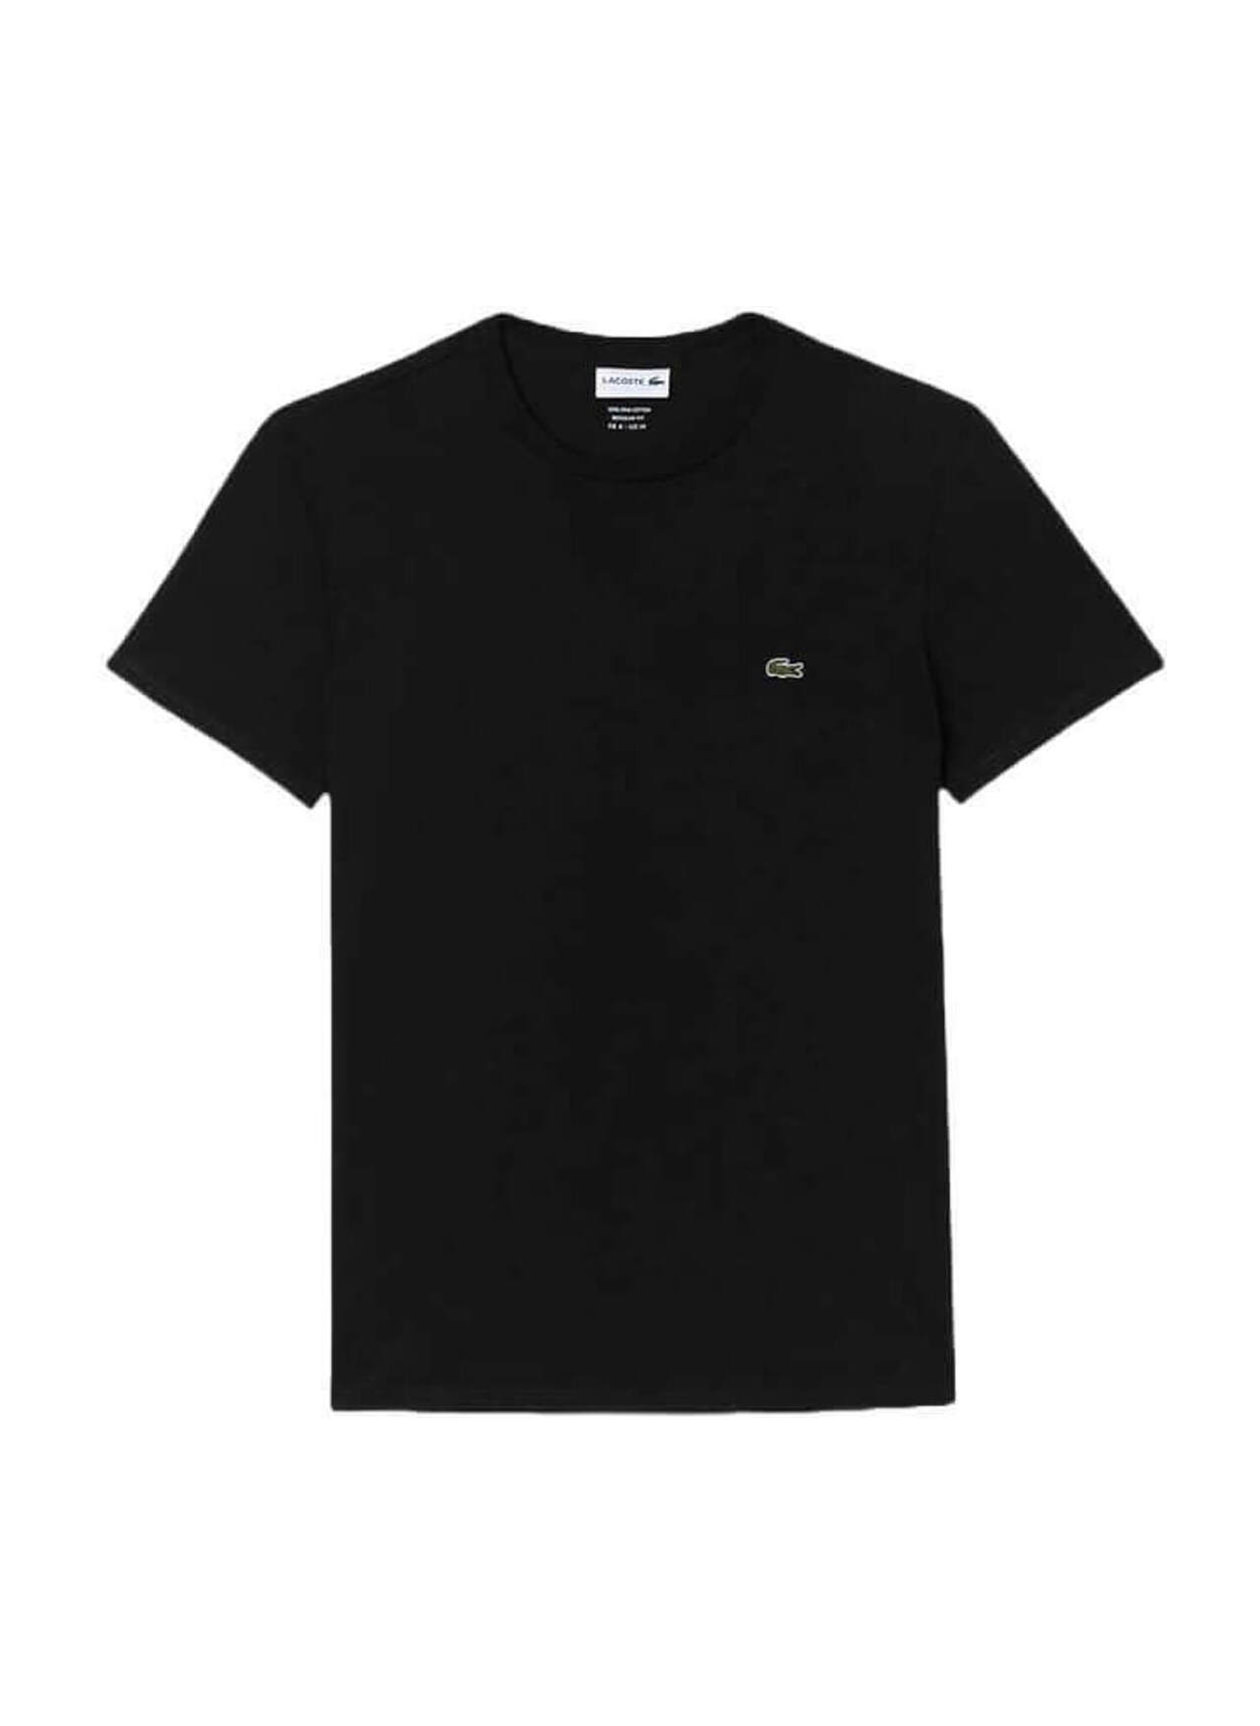 Lacoste Men's Black Crew Neck Pima Cotton T-Shirt